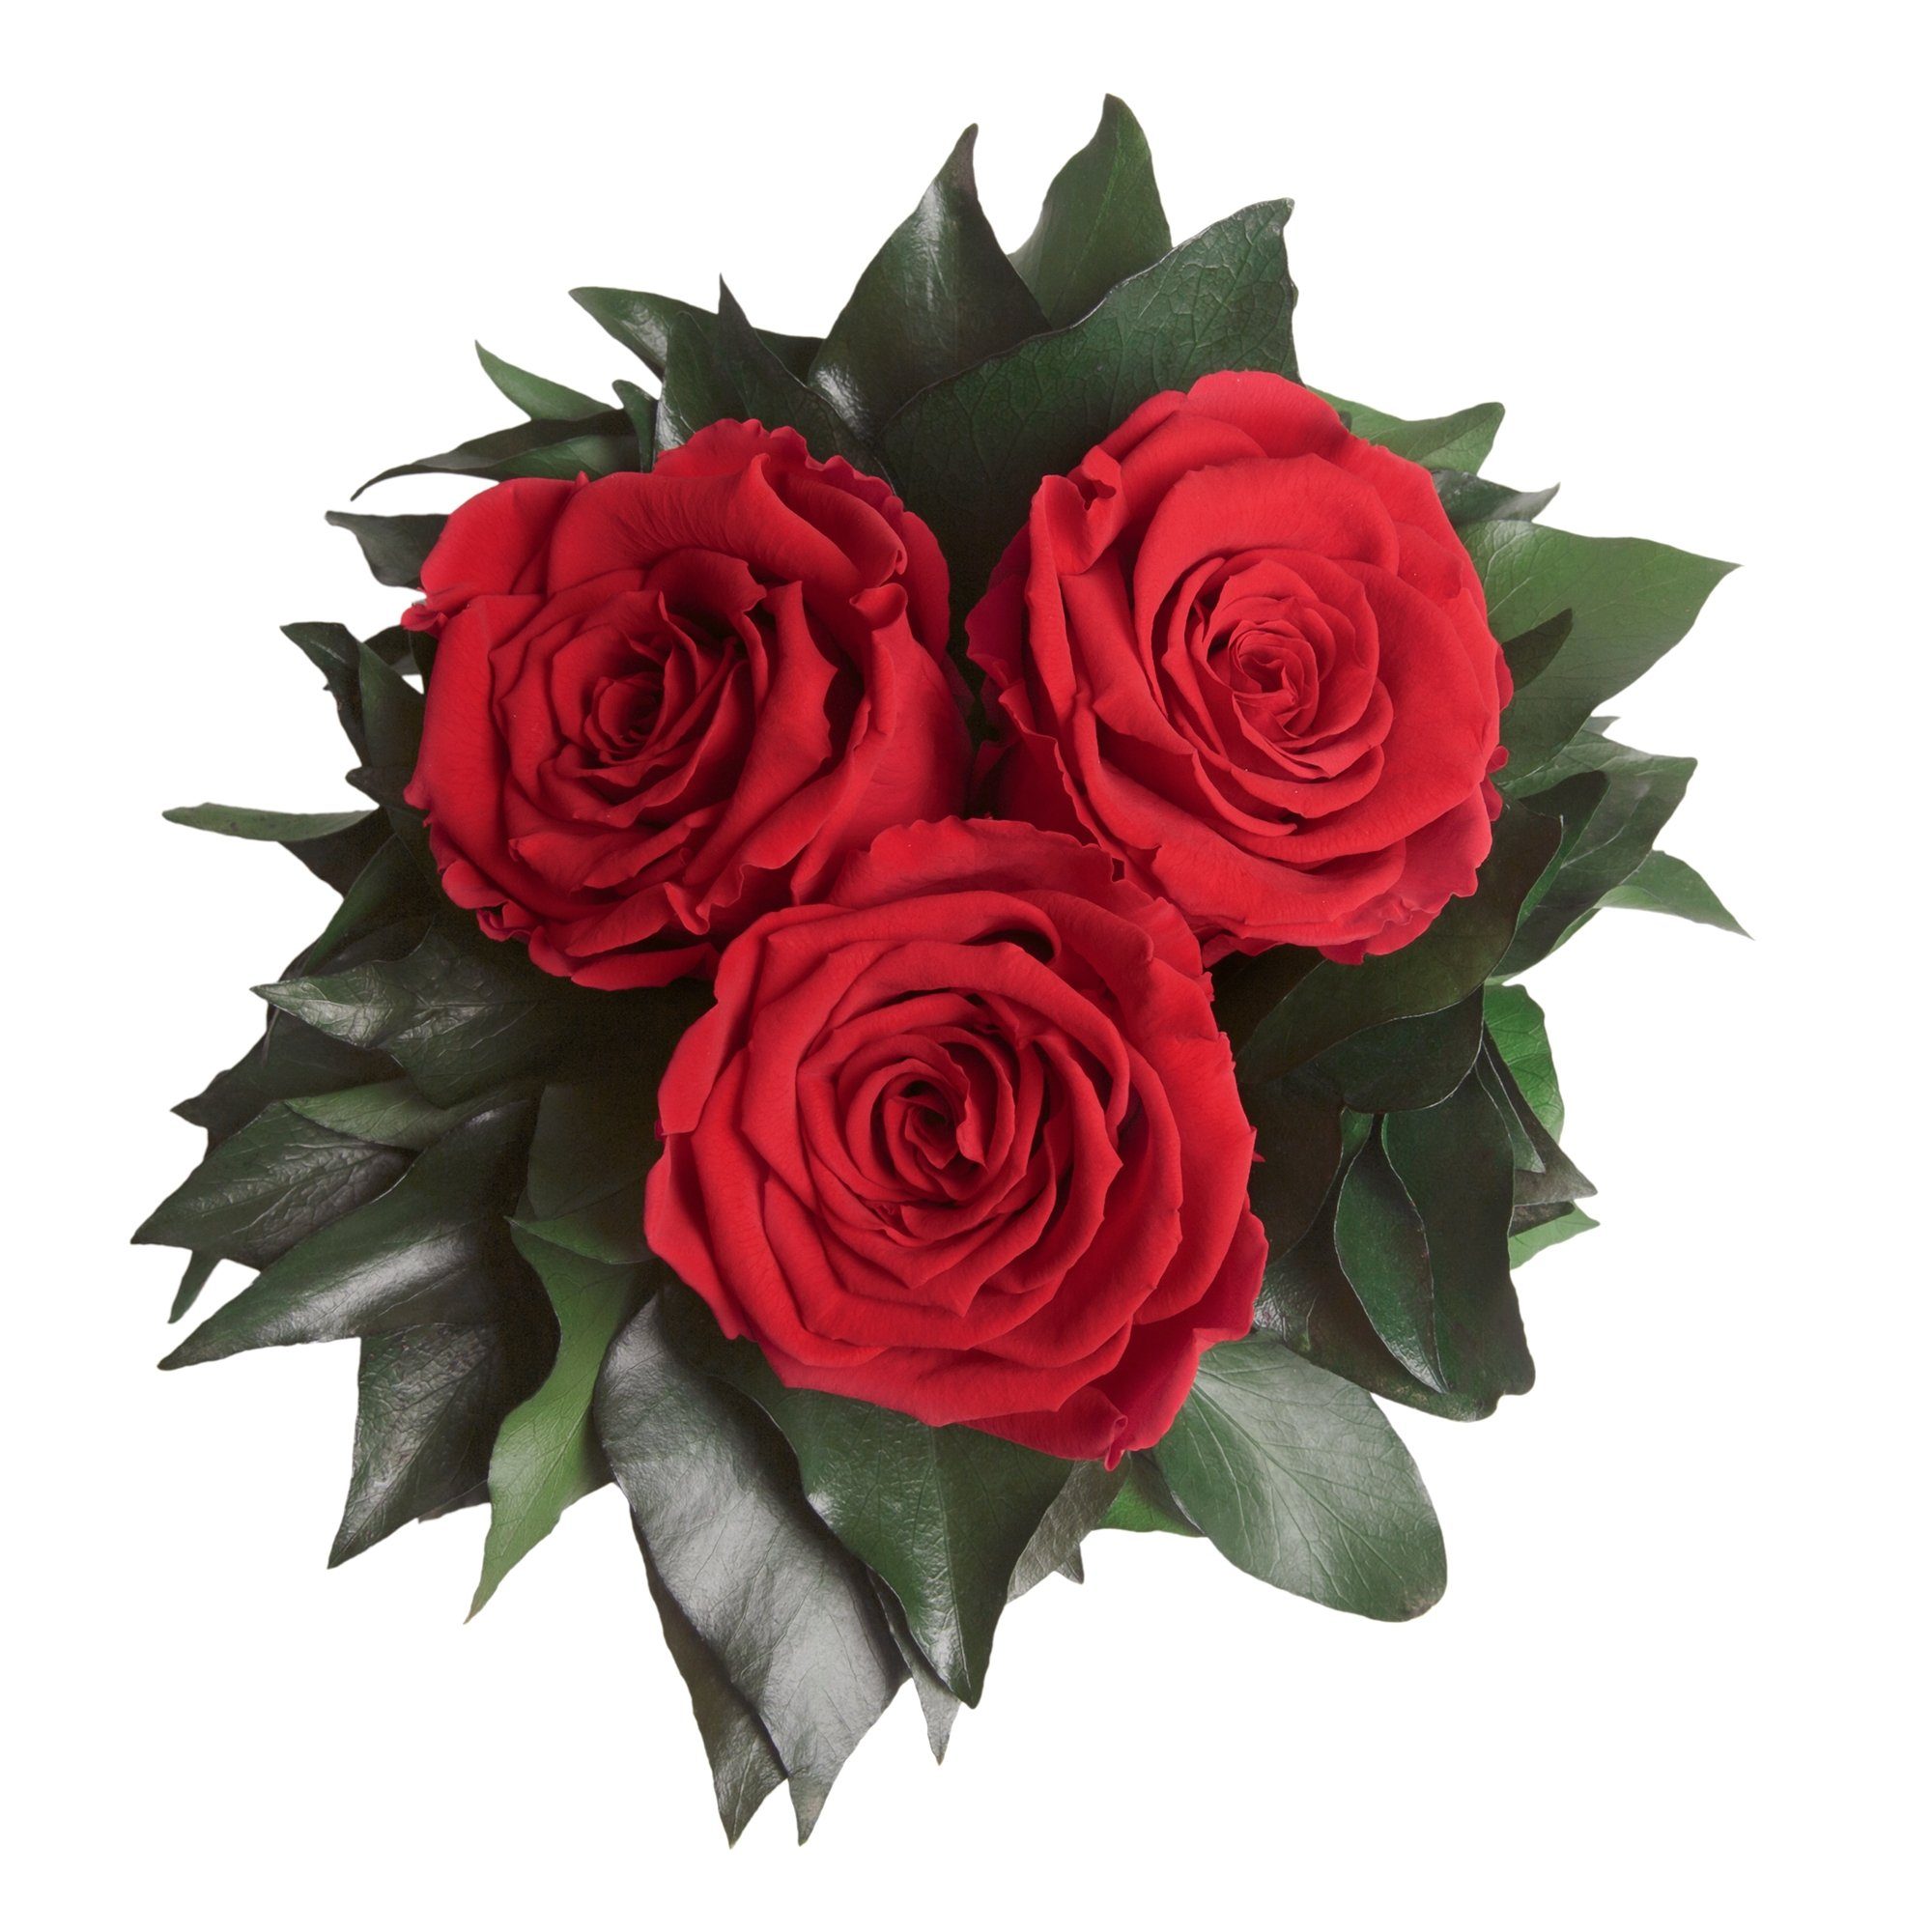 zu Rot Kunstorchidee SCHULZ ROSEMARIE Rosen Wohnzimmer 15 3 Infinity Blumenstrauß Vase Rose Höhe Deko Heidelberg, haltbar cm, Rose, 3 silberfarbene bis Jahre